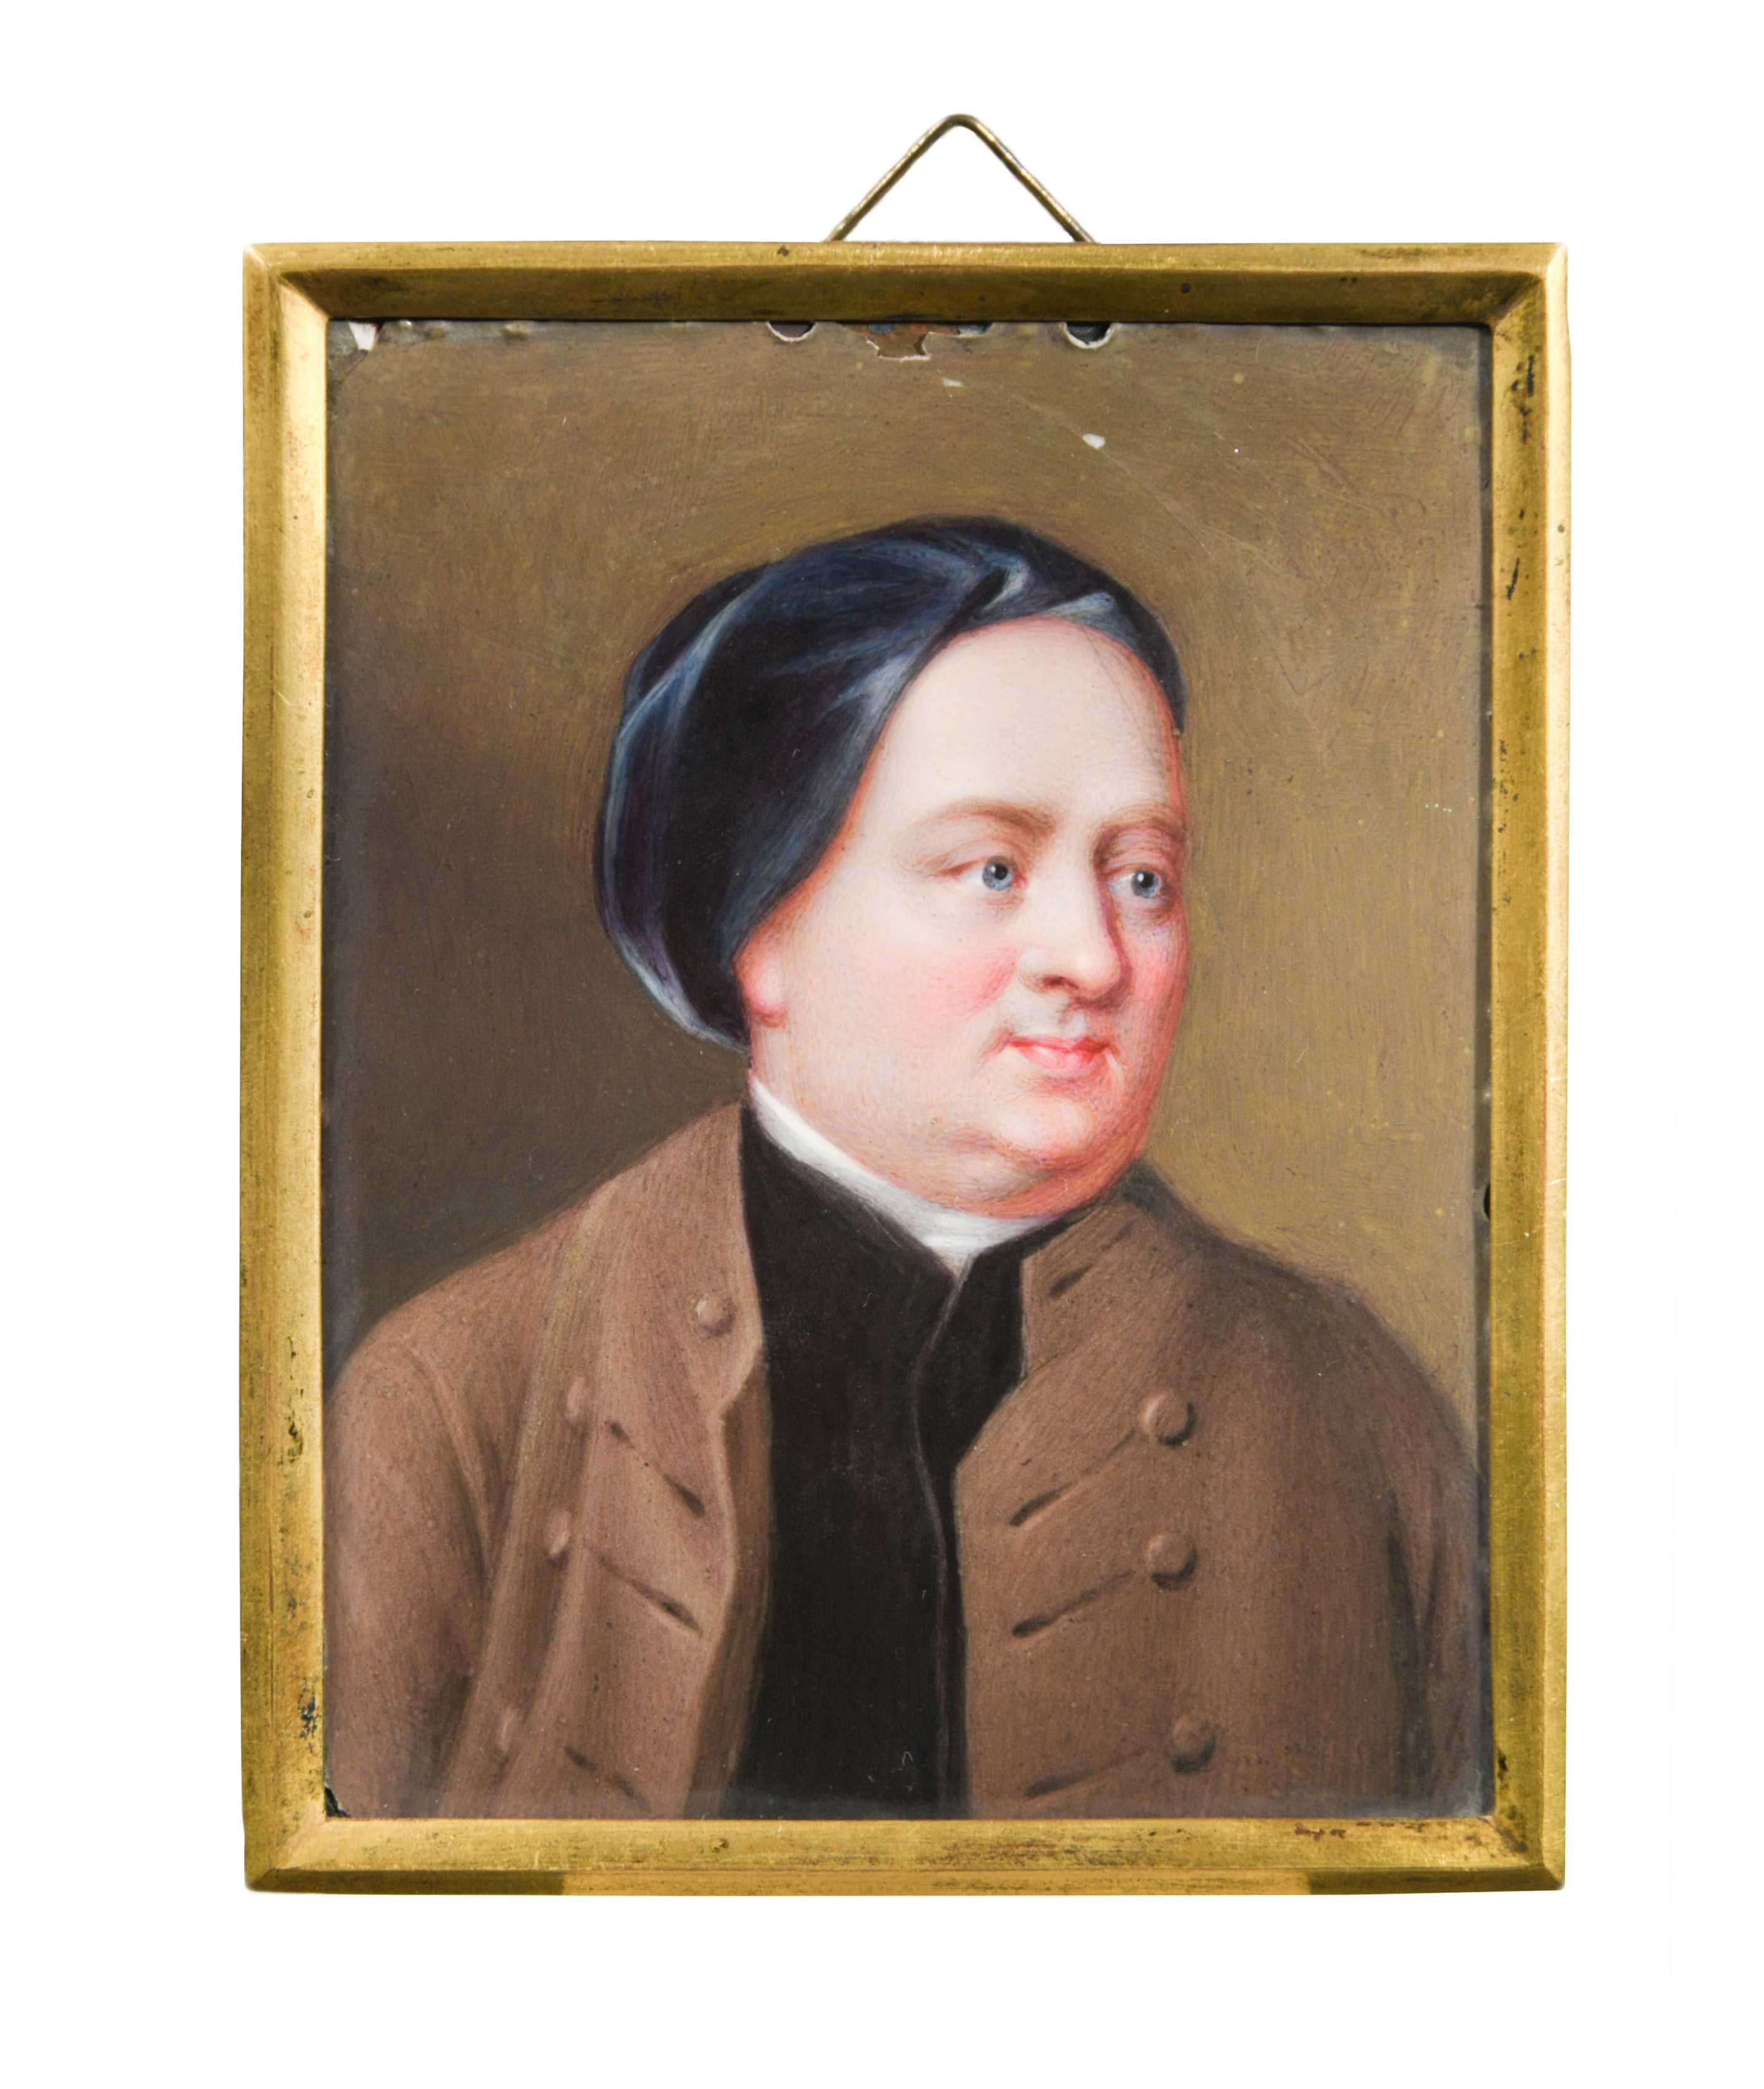 Henry Pierce Bone (British, 1779-1855) after Mason Chamberlin